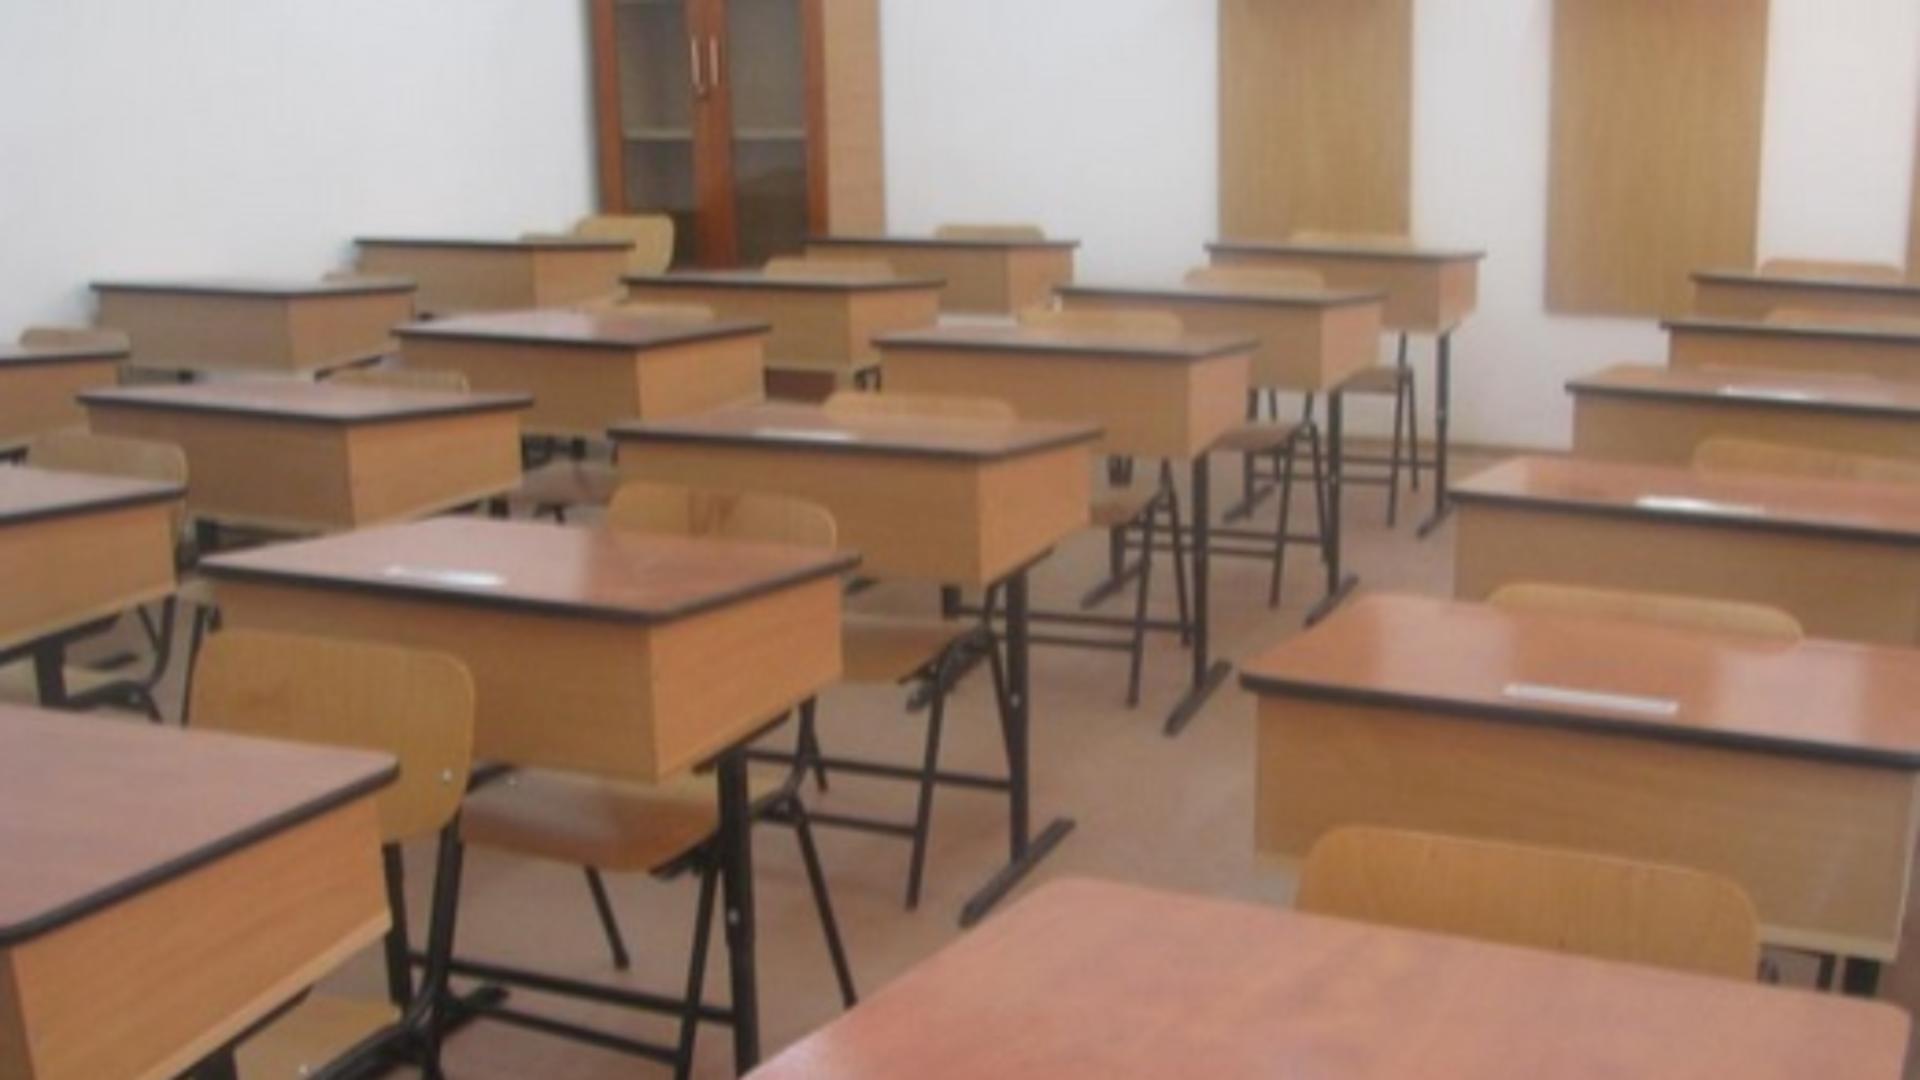 Învățător acuzat că bruschează elevii la ore